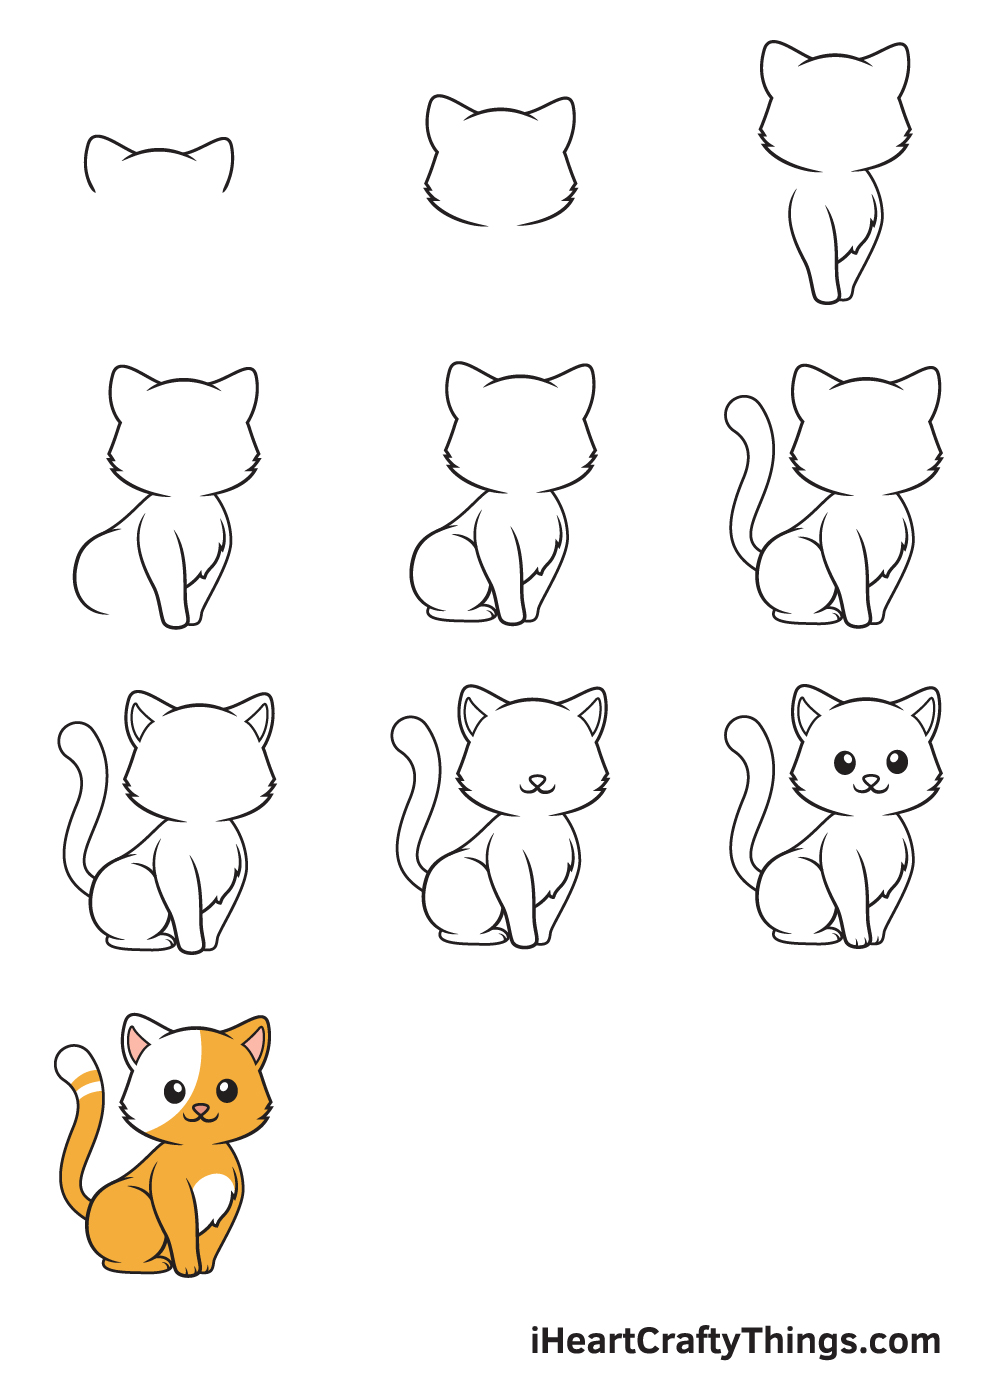 Vẽ mèo con trong 9 bước đơn giản